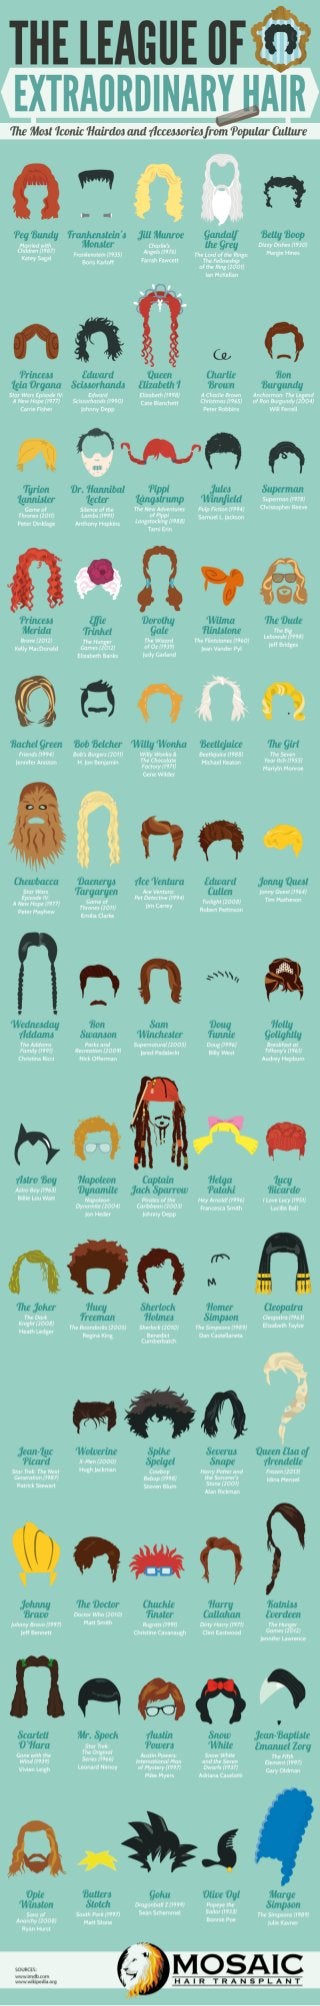 The League of Extraordinary Hair